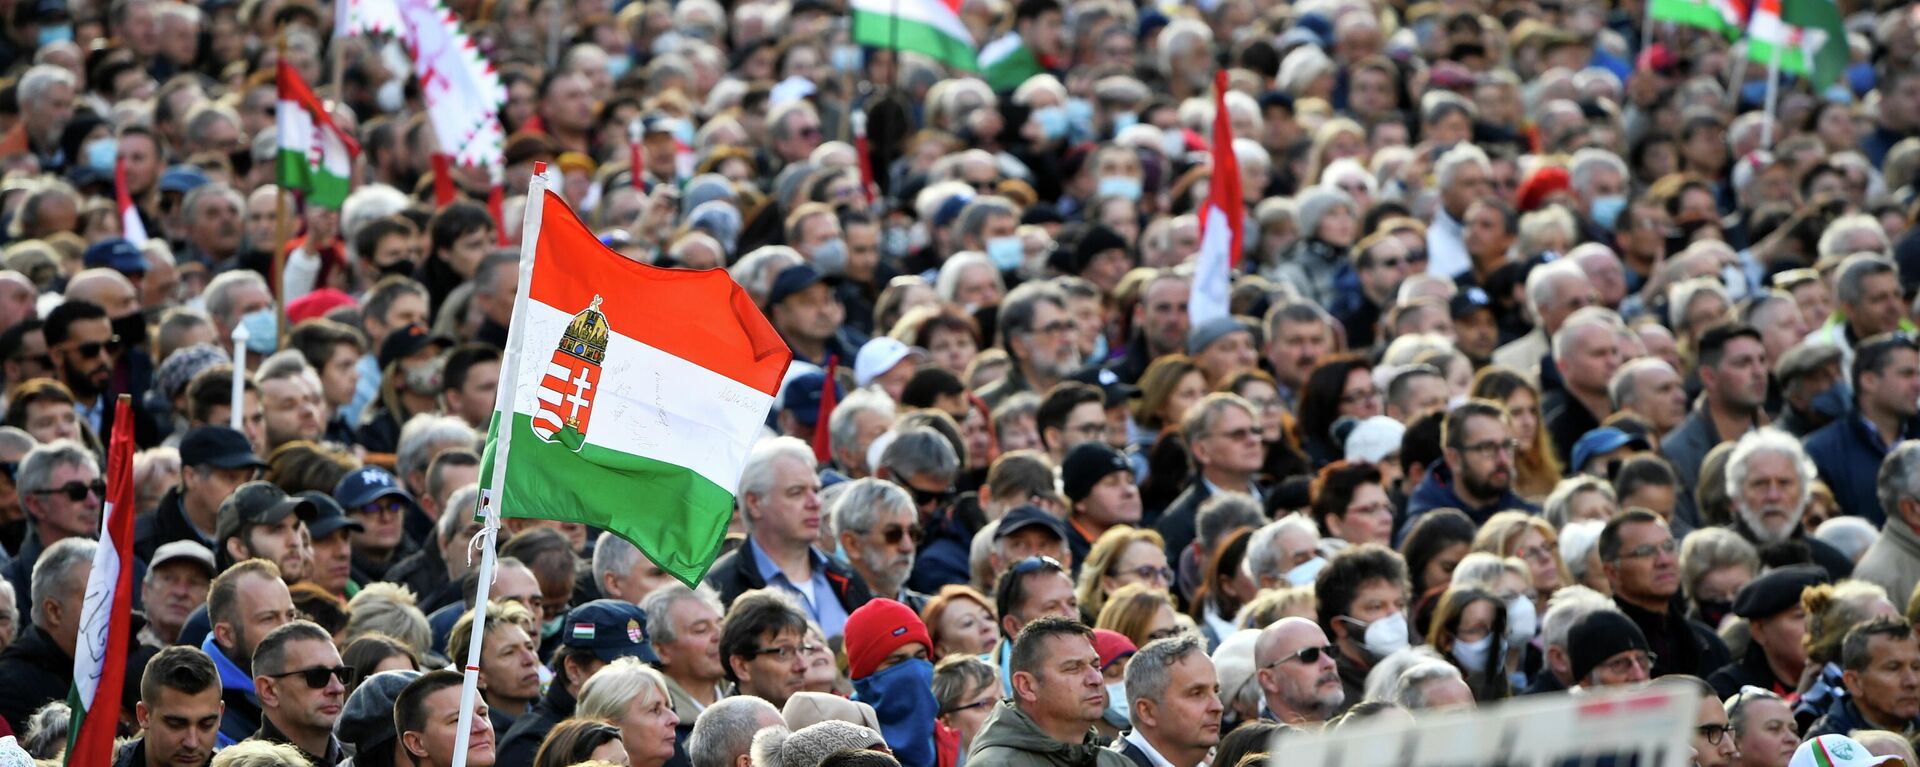 Люди на митинге премьер-министра Виктора Орбана - Sputnik Азербайджан, 1920, 15.11.2021